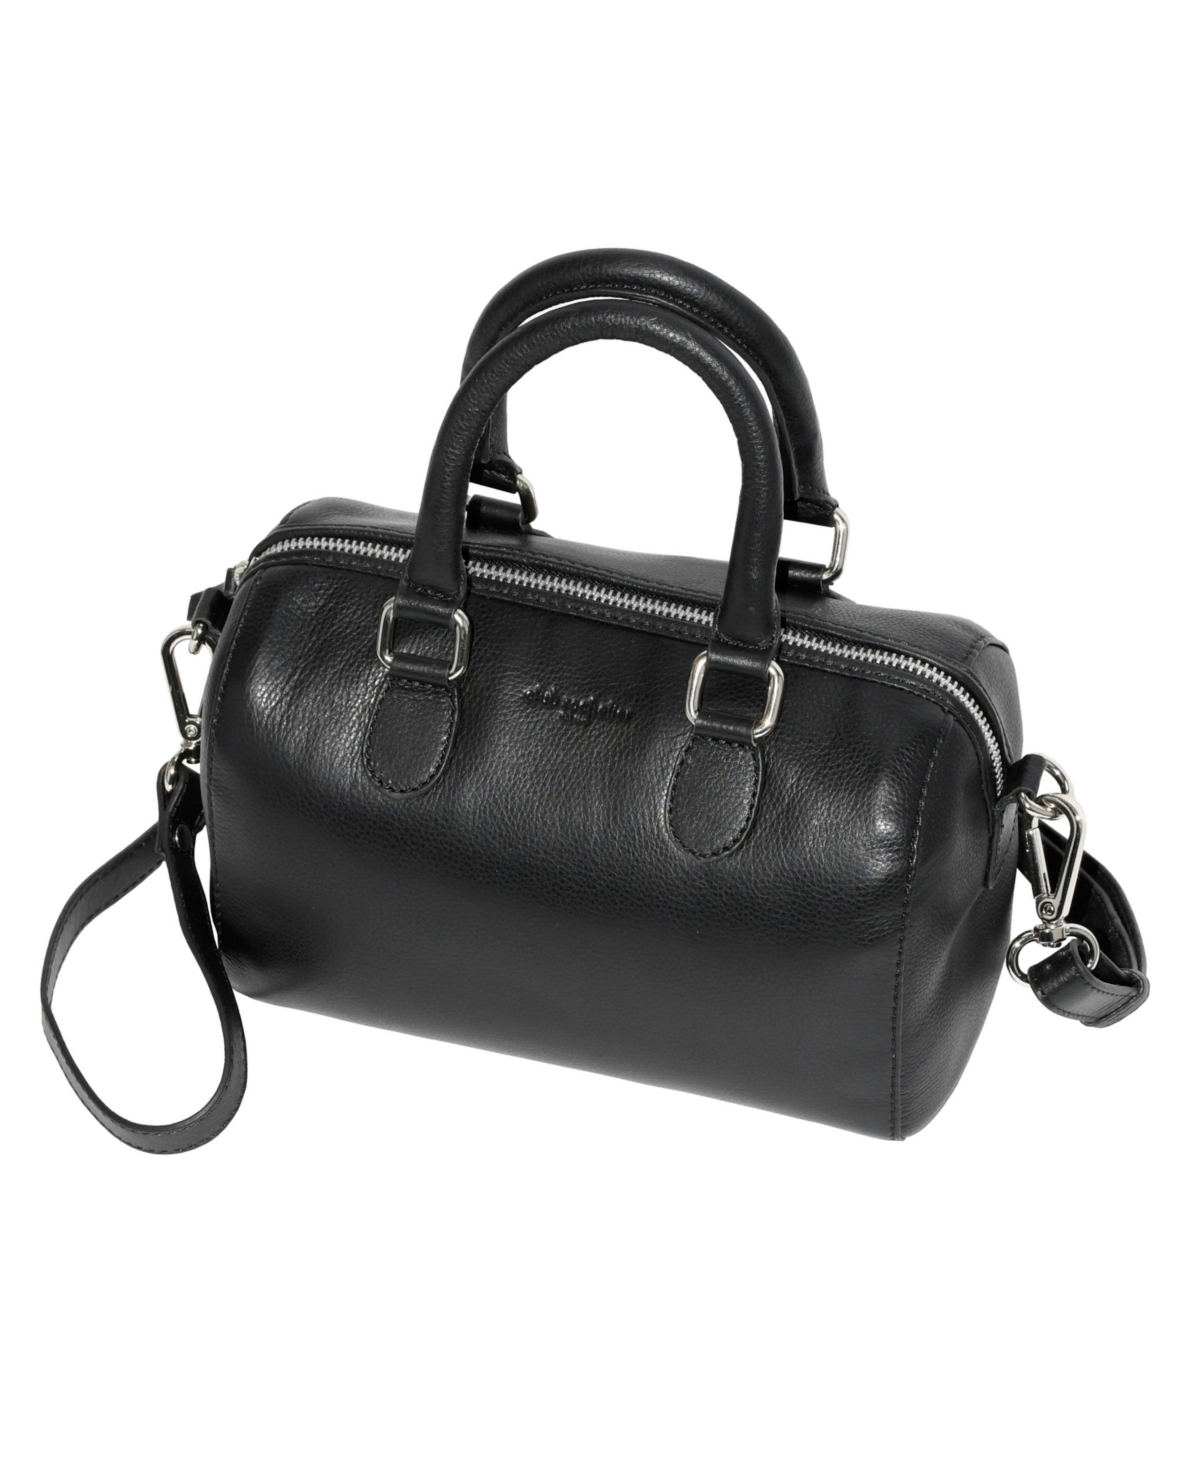 Ladies Leather Barrel Bag with Adjustable Strap - Black